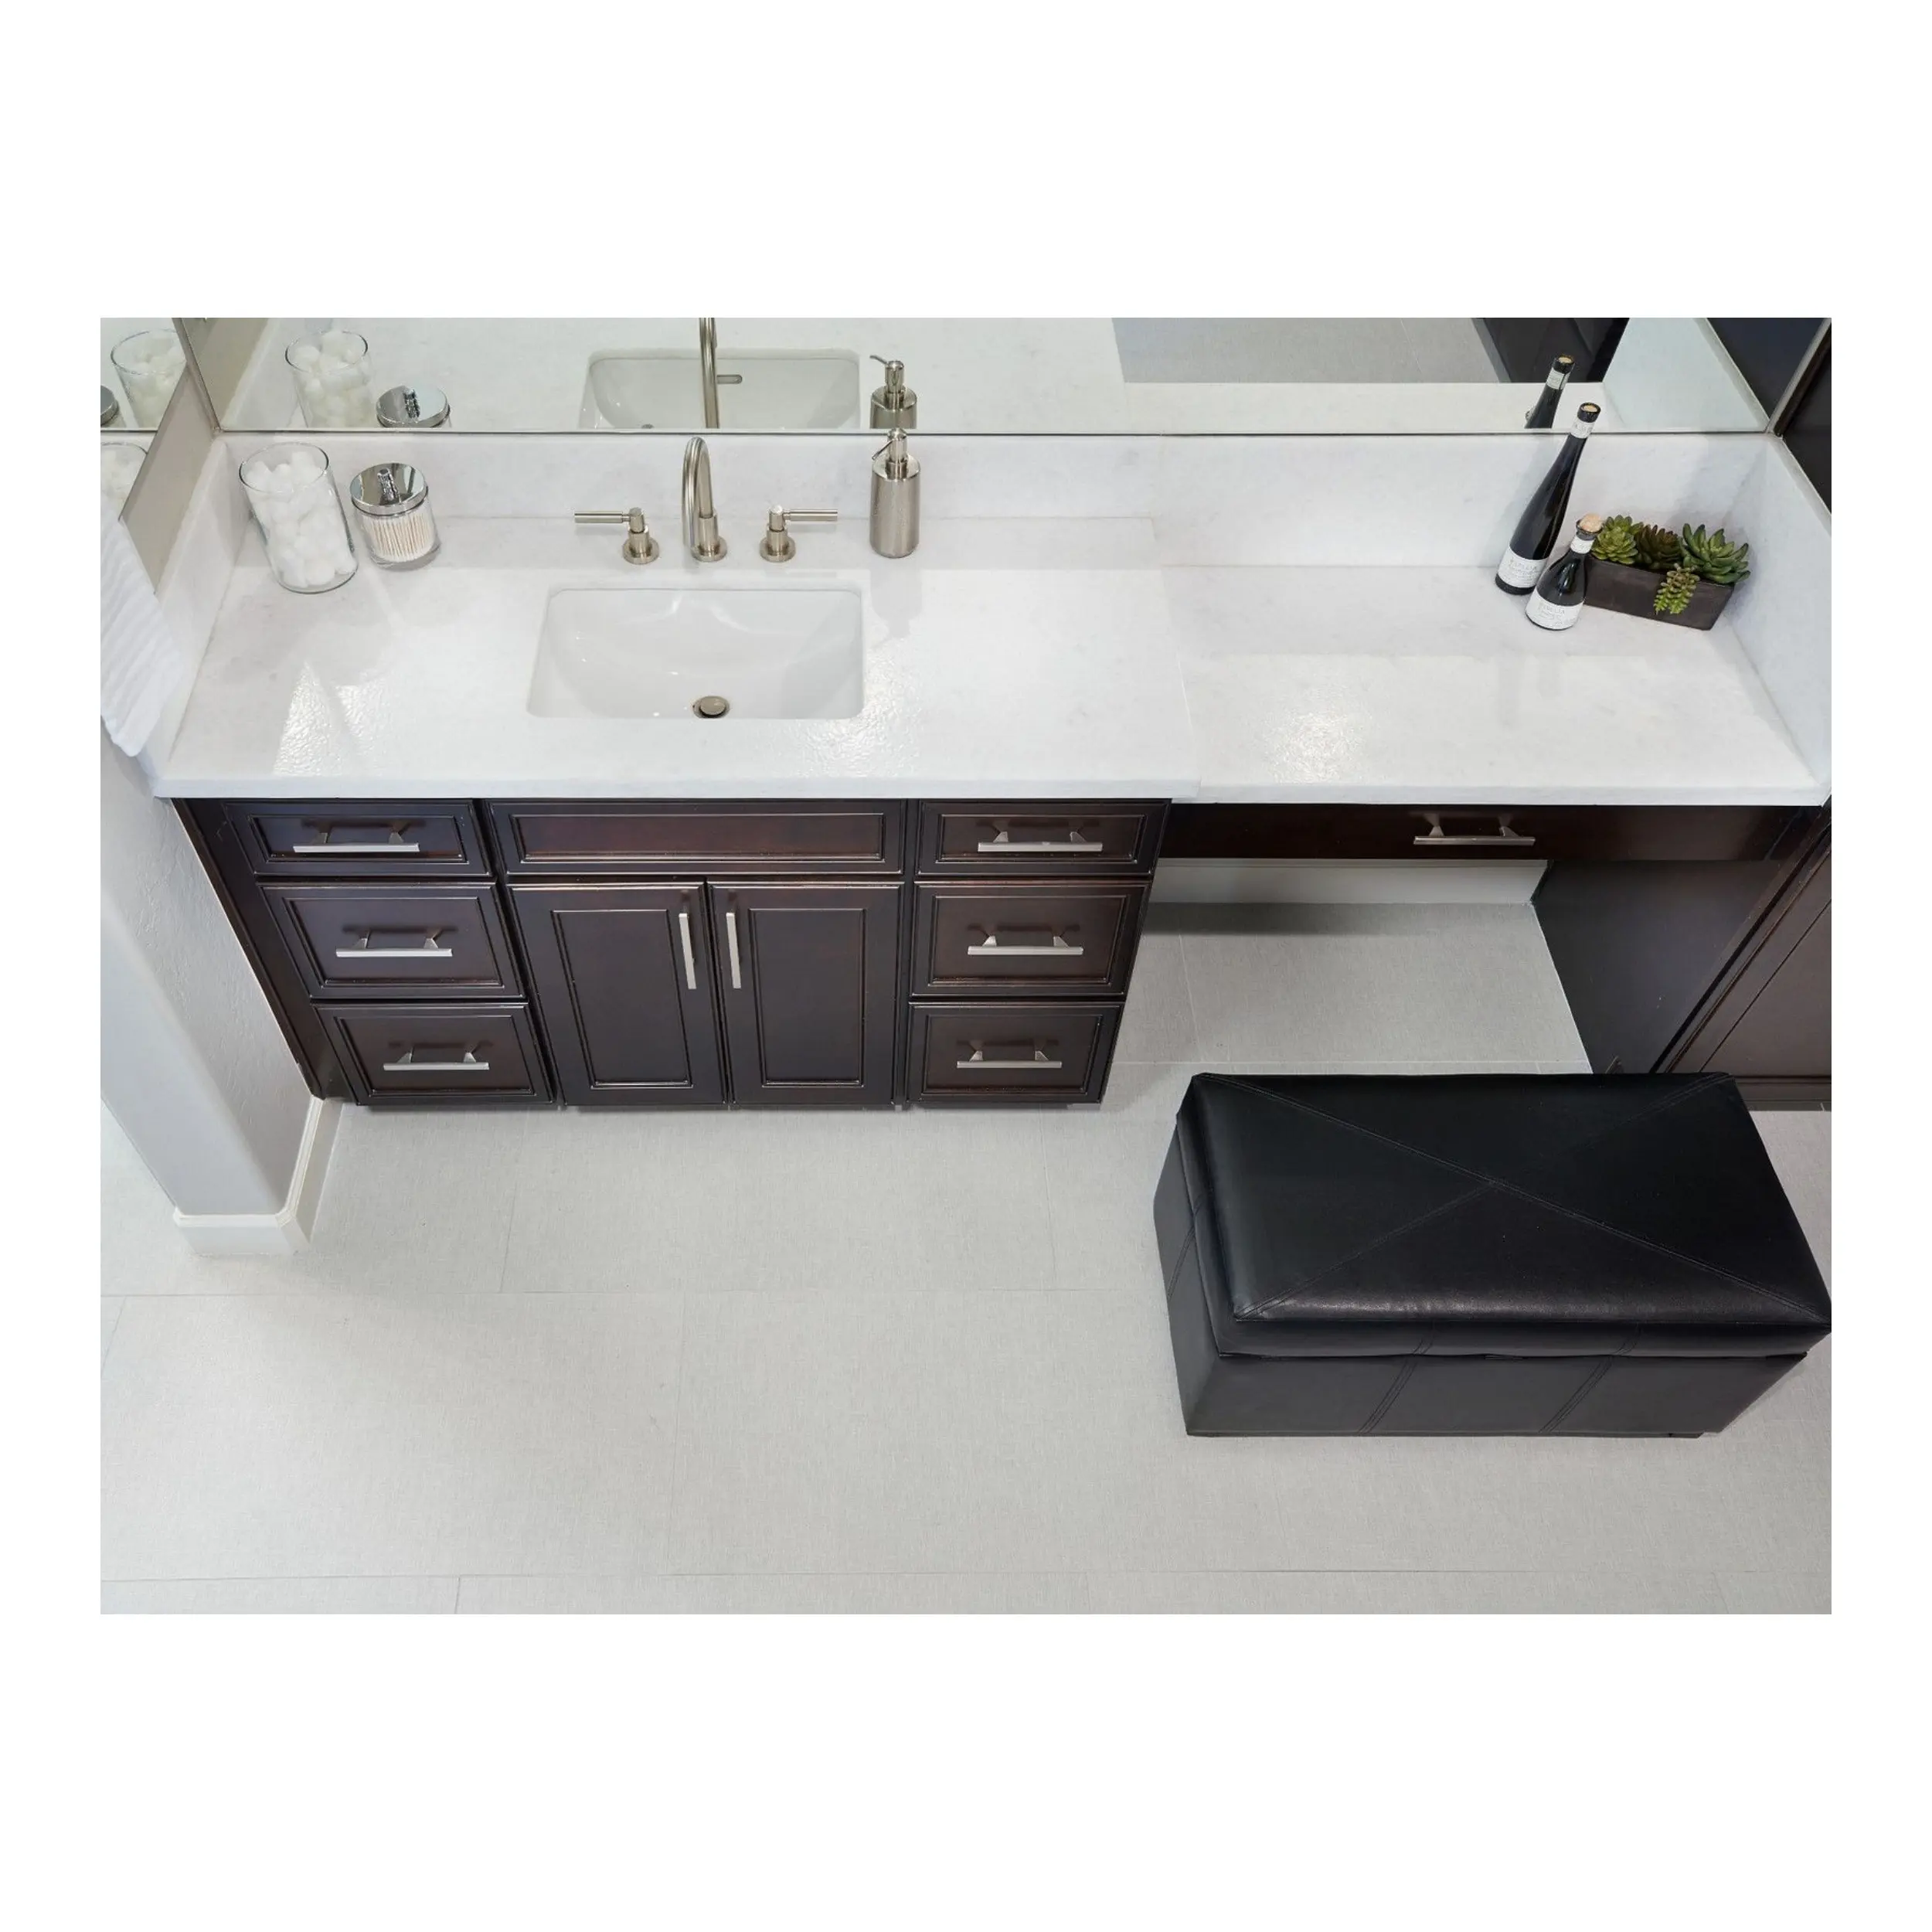 Batu alami Opal putih Satin marmer untuk kamar mandi dapur meja Pulau pelapis dinding hitam Marmo dipoles